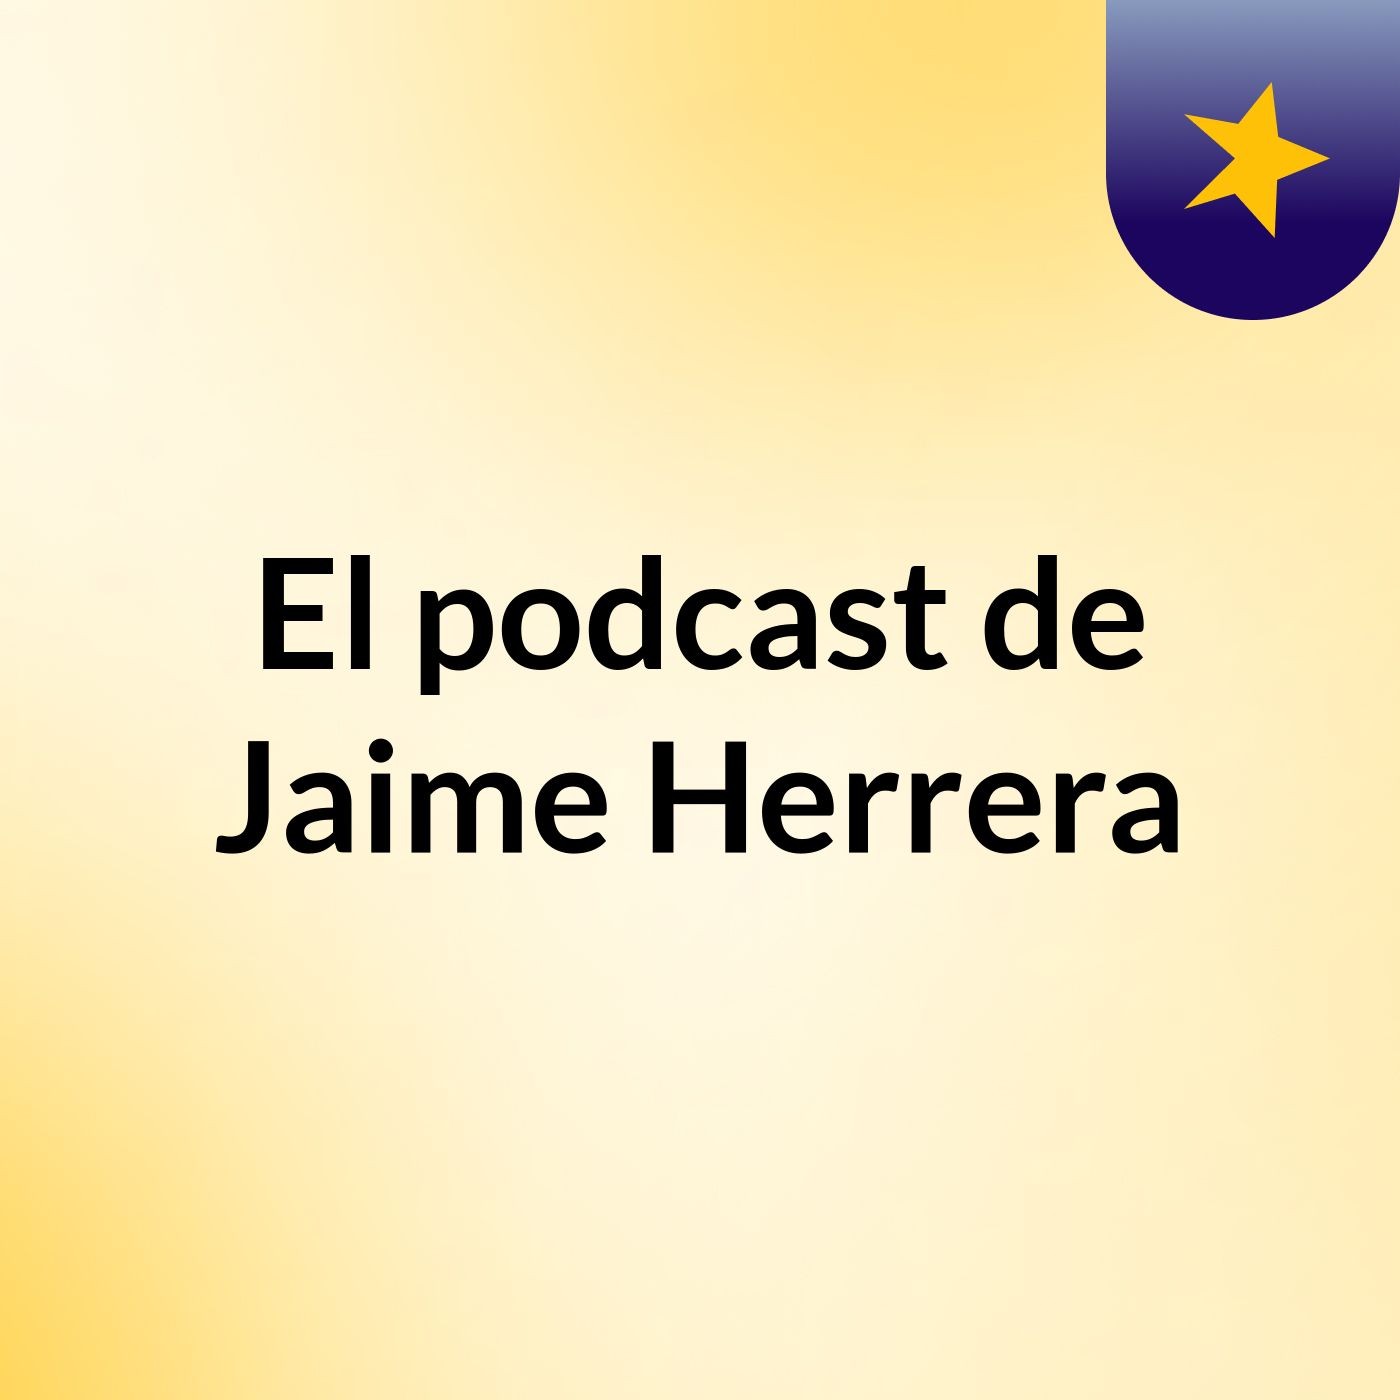 Episodio 9jjjkk - El podcast de Jaime Herrera